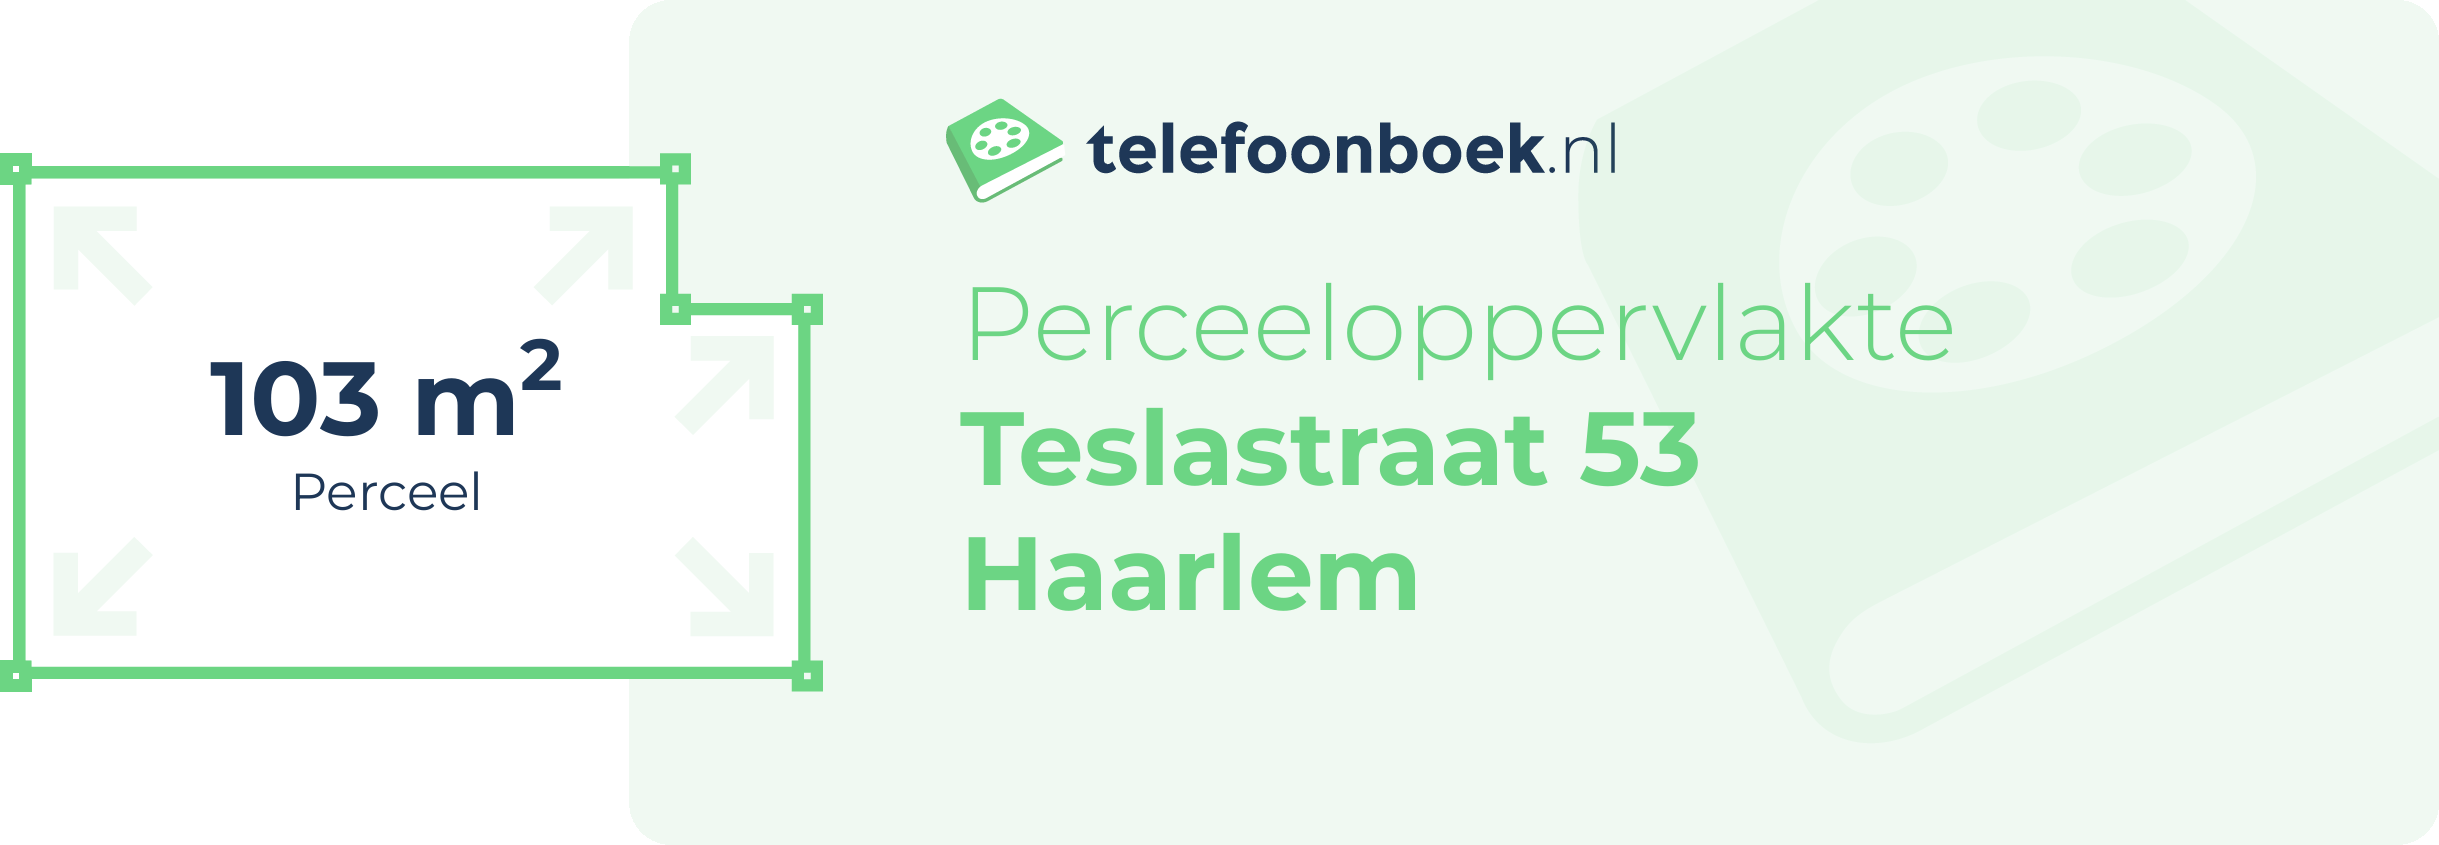 Perceeloppervlakte Teslastraat 53 Haarlem